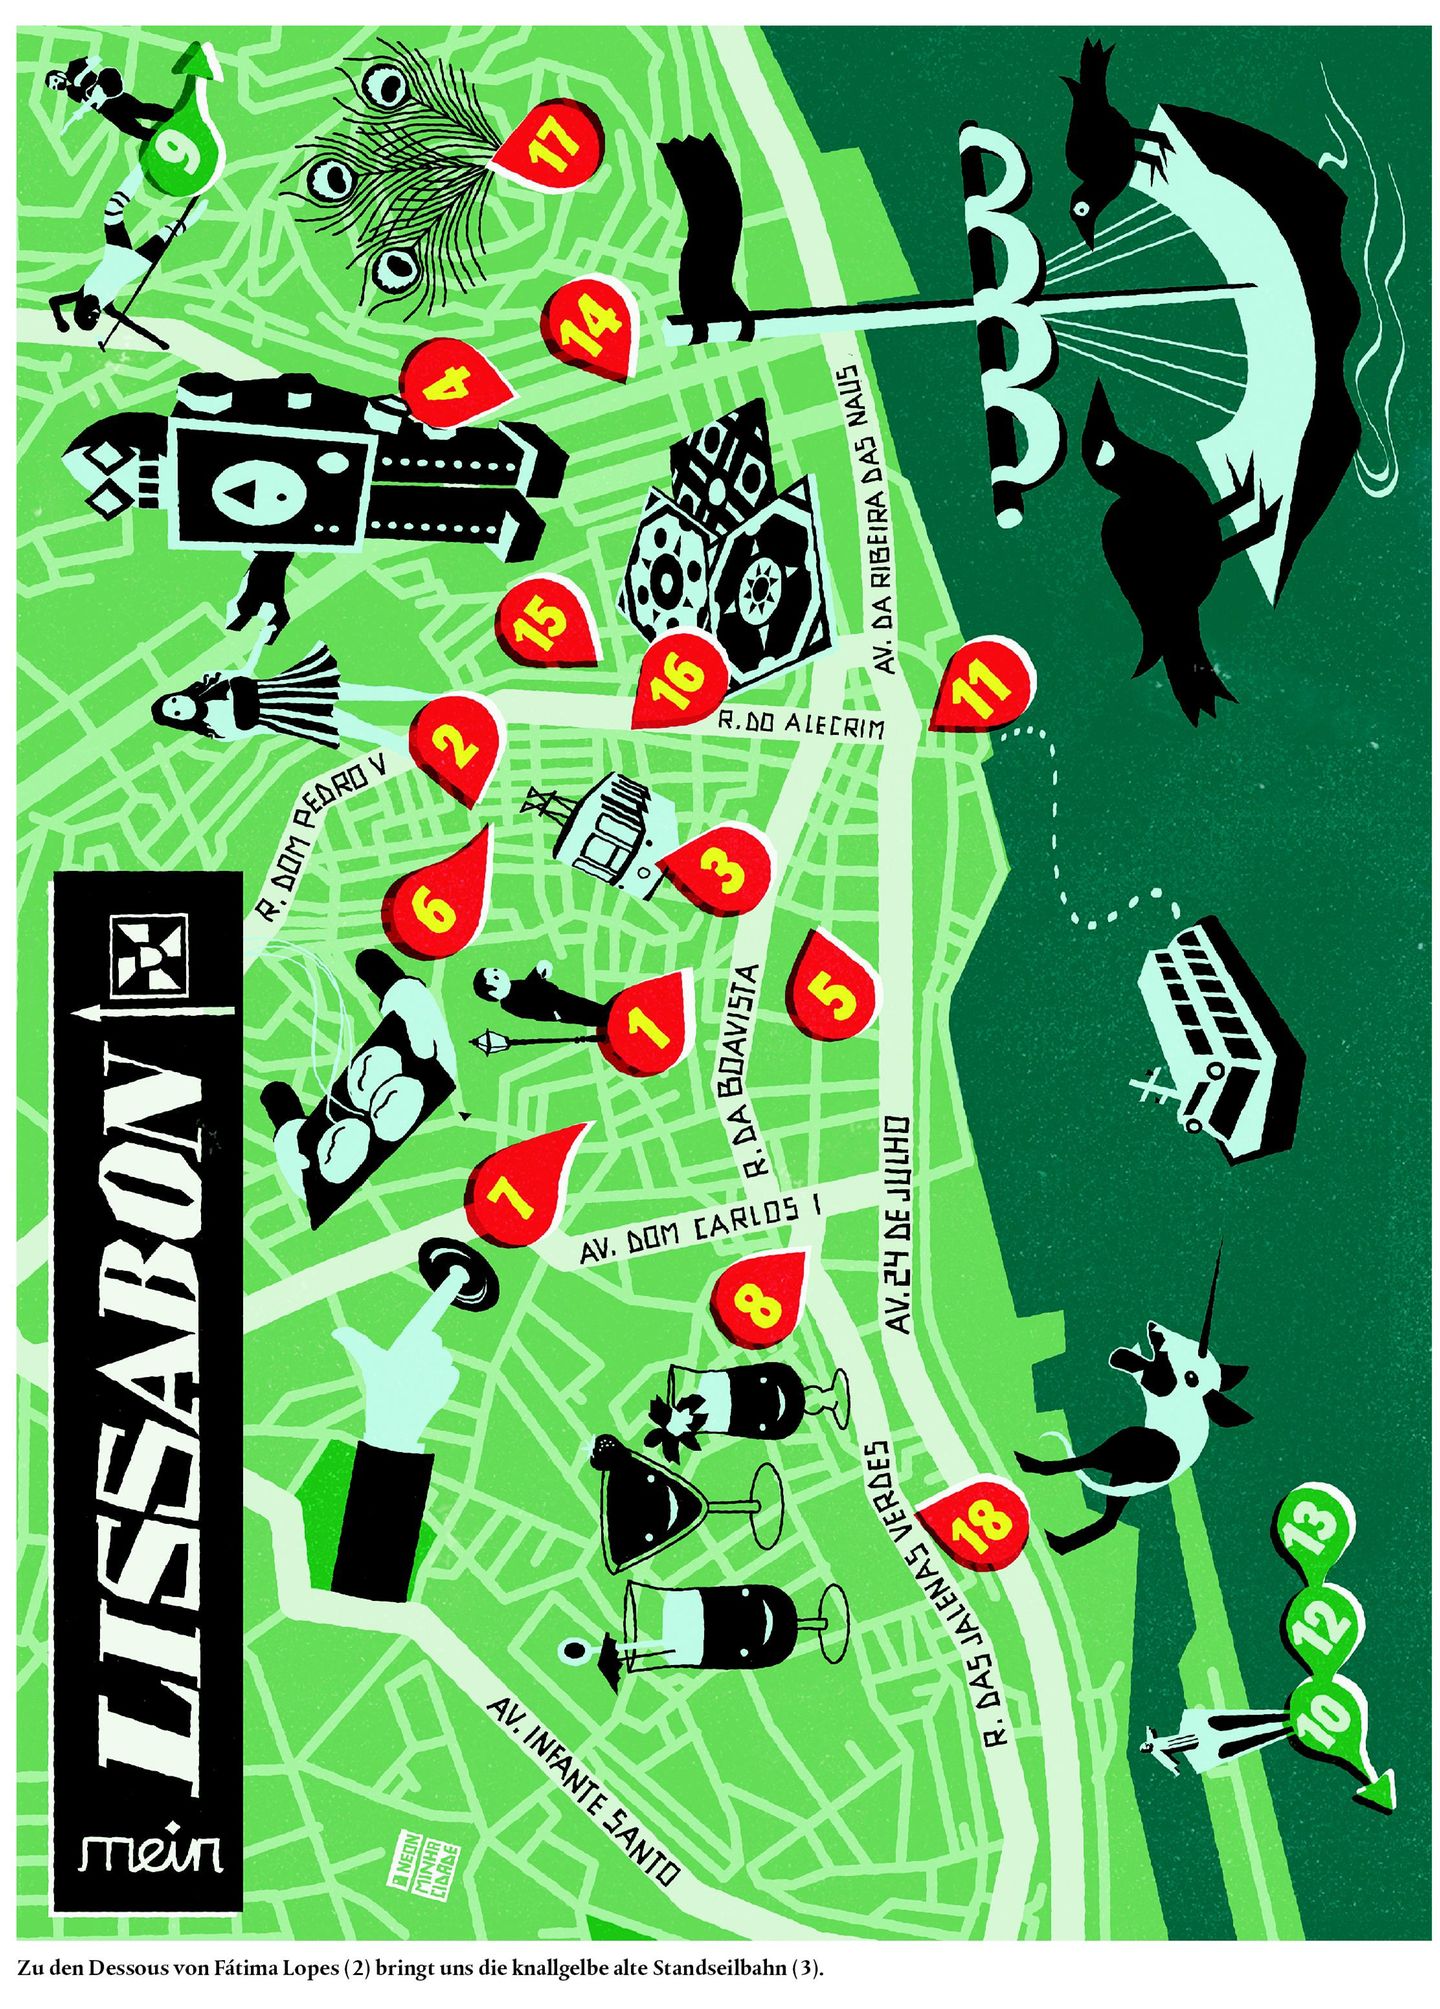 Karte von Lissabon in der NEON-Rubrik "Meine Stadt"